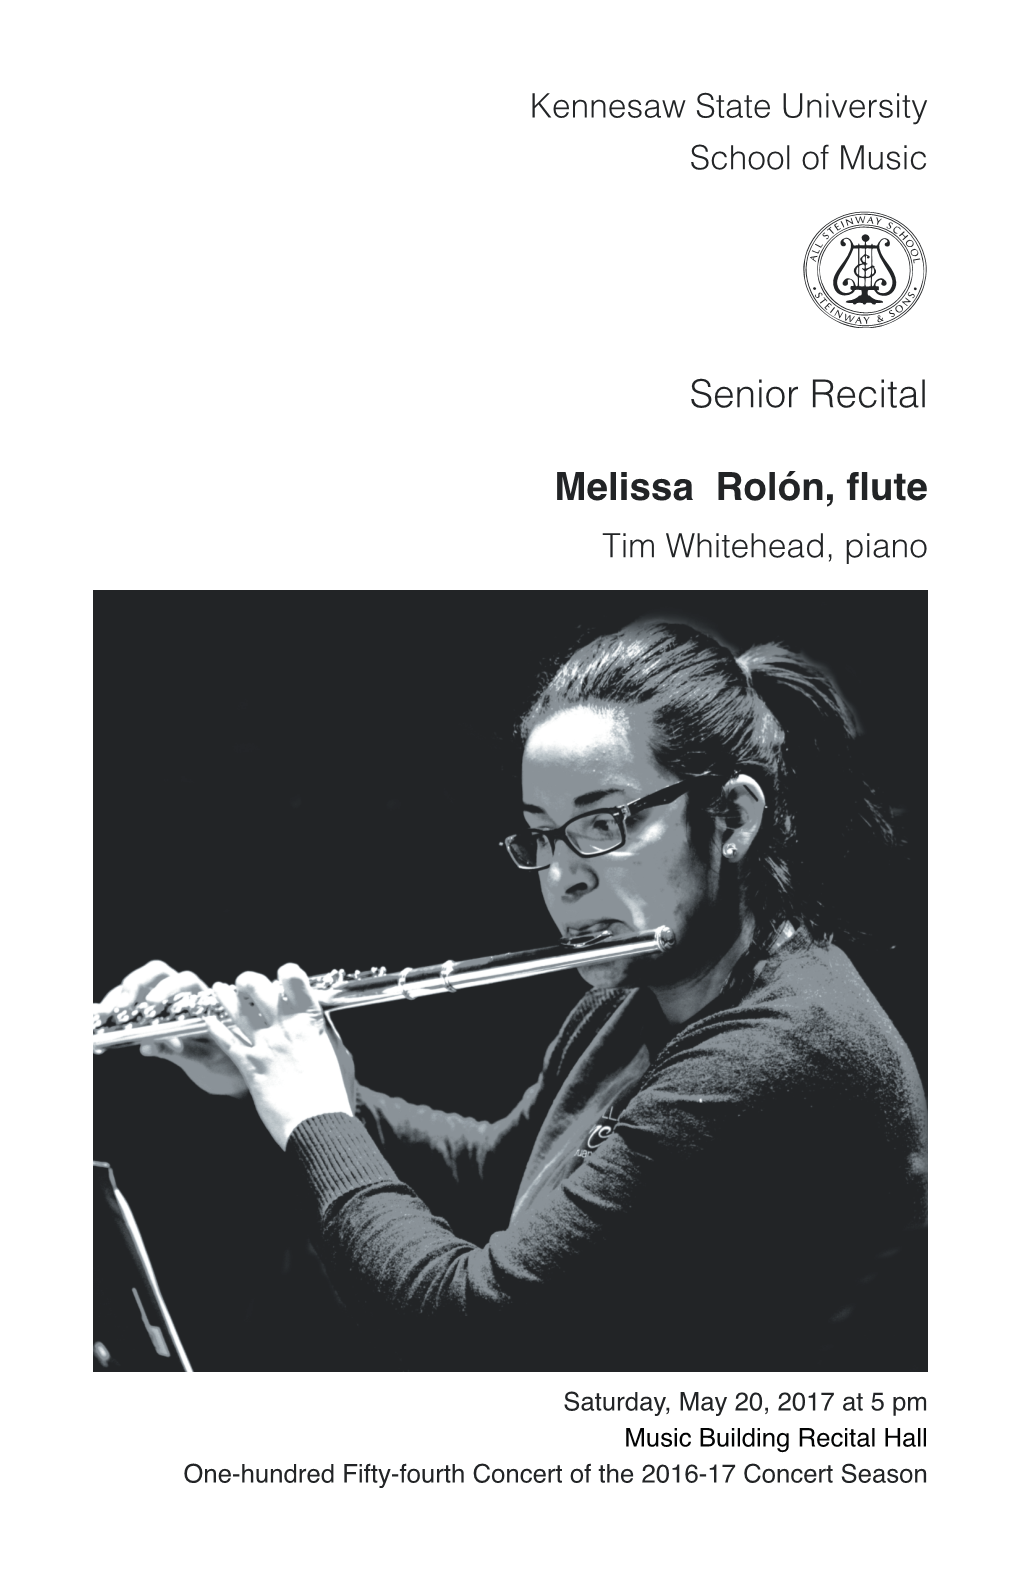 Senior Recital: Melissa Rolón, Flute